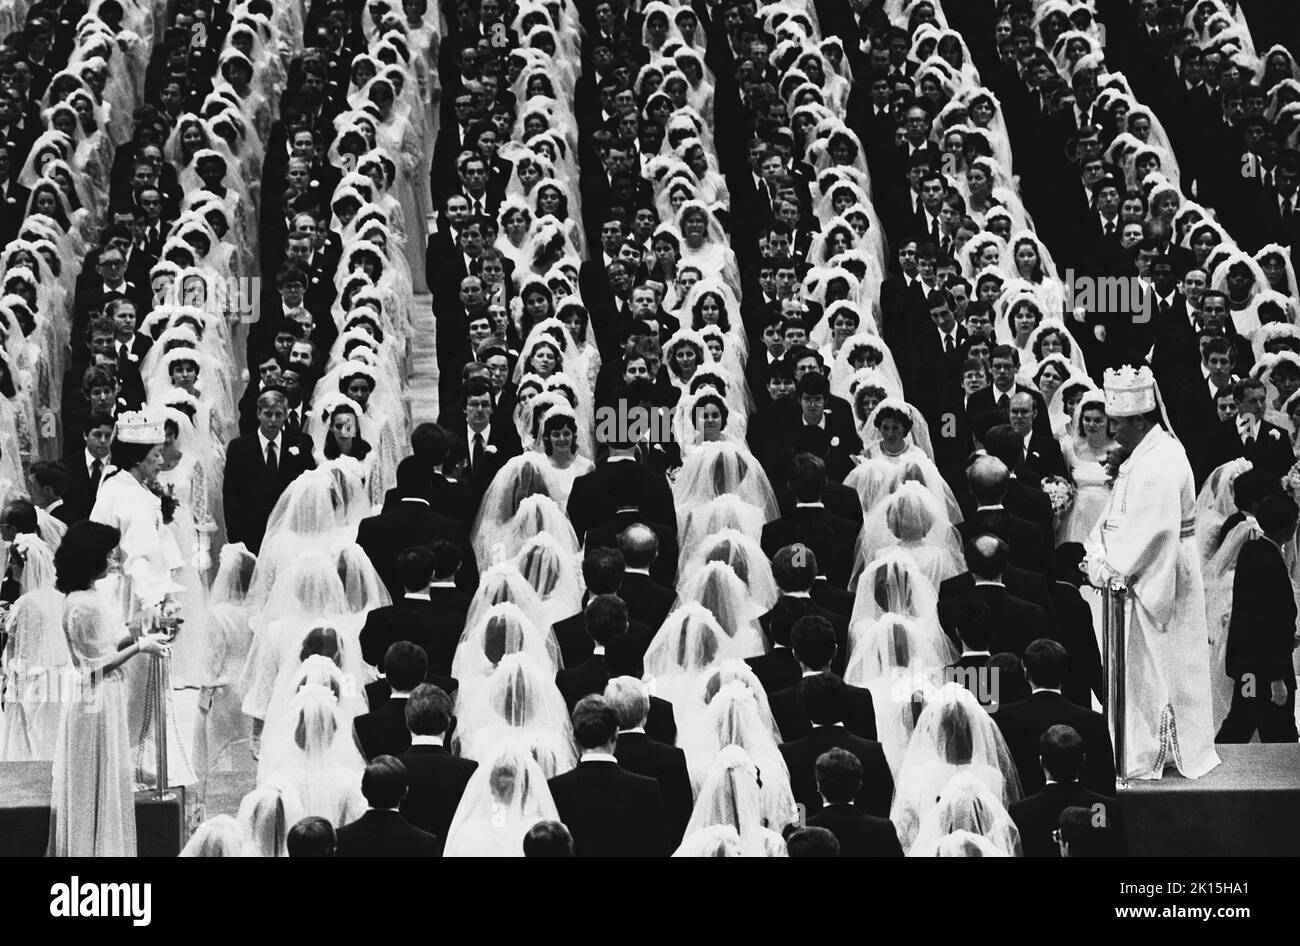 Una boda de luna o 'ceremonia de bendición' en Madison Square Garden, donde el Reverendo Sol Myung Moon se casó espiritualmente con más de 2000 parejas en 1982. Aparece en la parte inferior derecha de esta foto, mientras que su esposa, Hak Ja Han, puede verse en la parte inferior izquierda. Moon (nacido en 1920 en Corea) es el fundador de la Iglesia de la Unificación. Él cree que Él es la Segunda Venida de Cristo. Frecuentemente lleva a cabo bodas espirituales masivas entre sus seguidores. Foto de stock